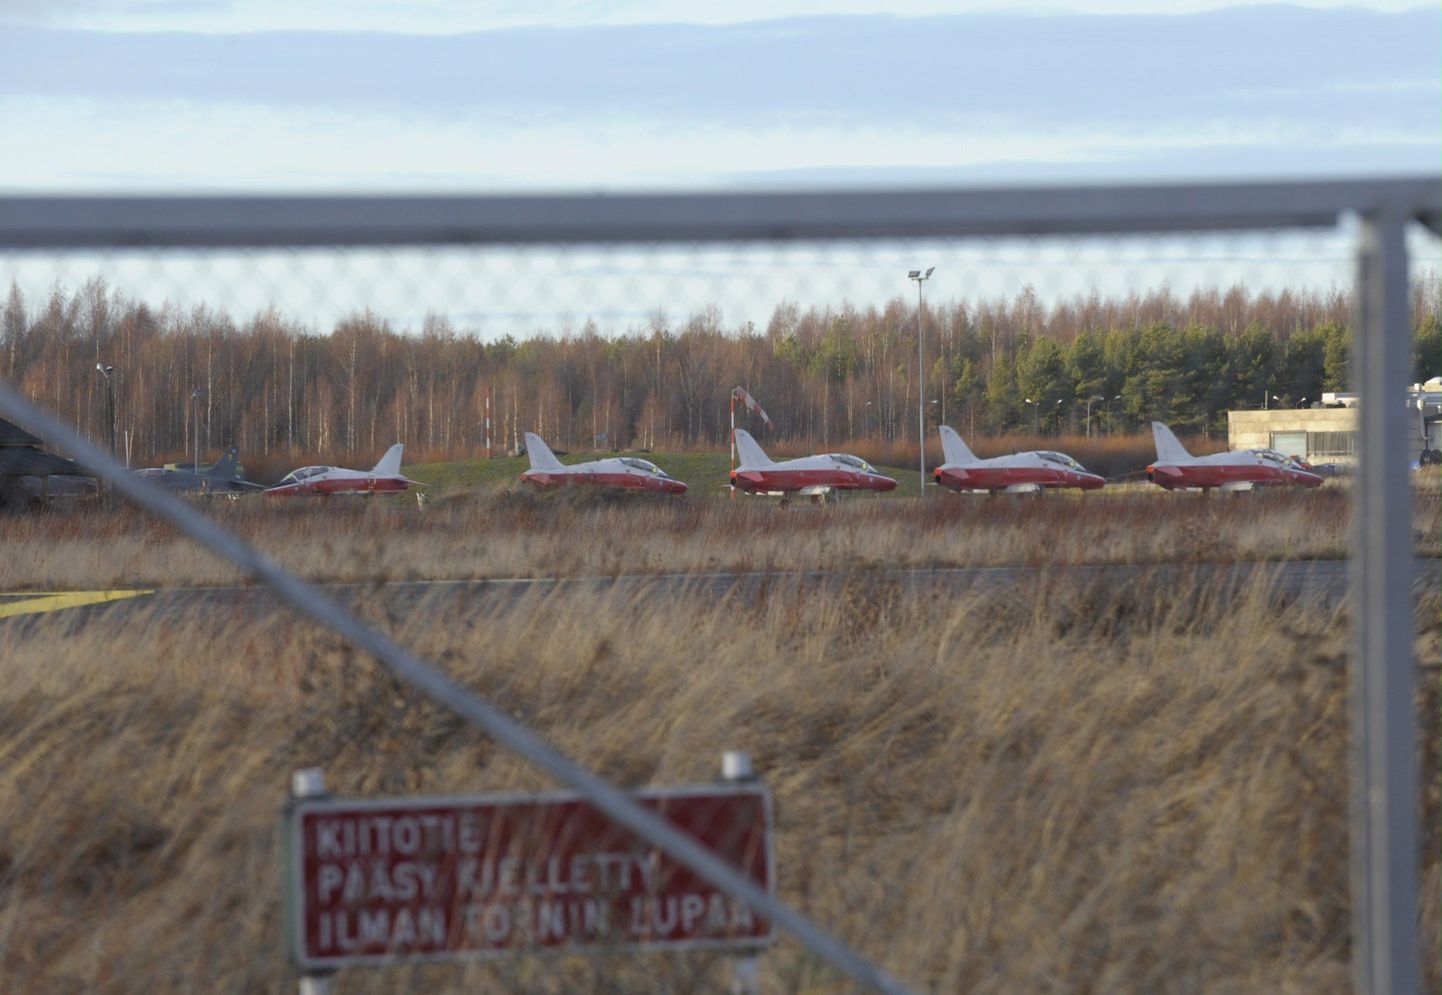 Hawk-tüüpi hävituslennukid, mida sõjalennukoolis kasutatakse treeninglennukitena, Kauhava lennuväljal.